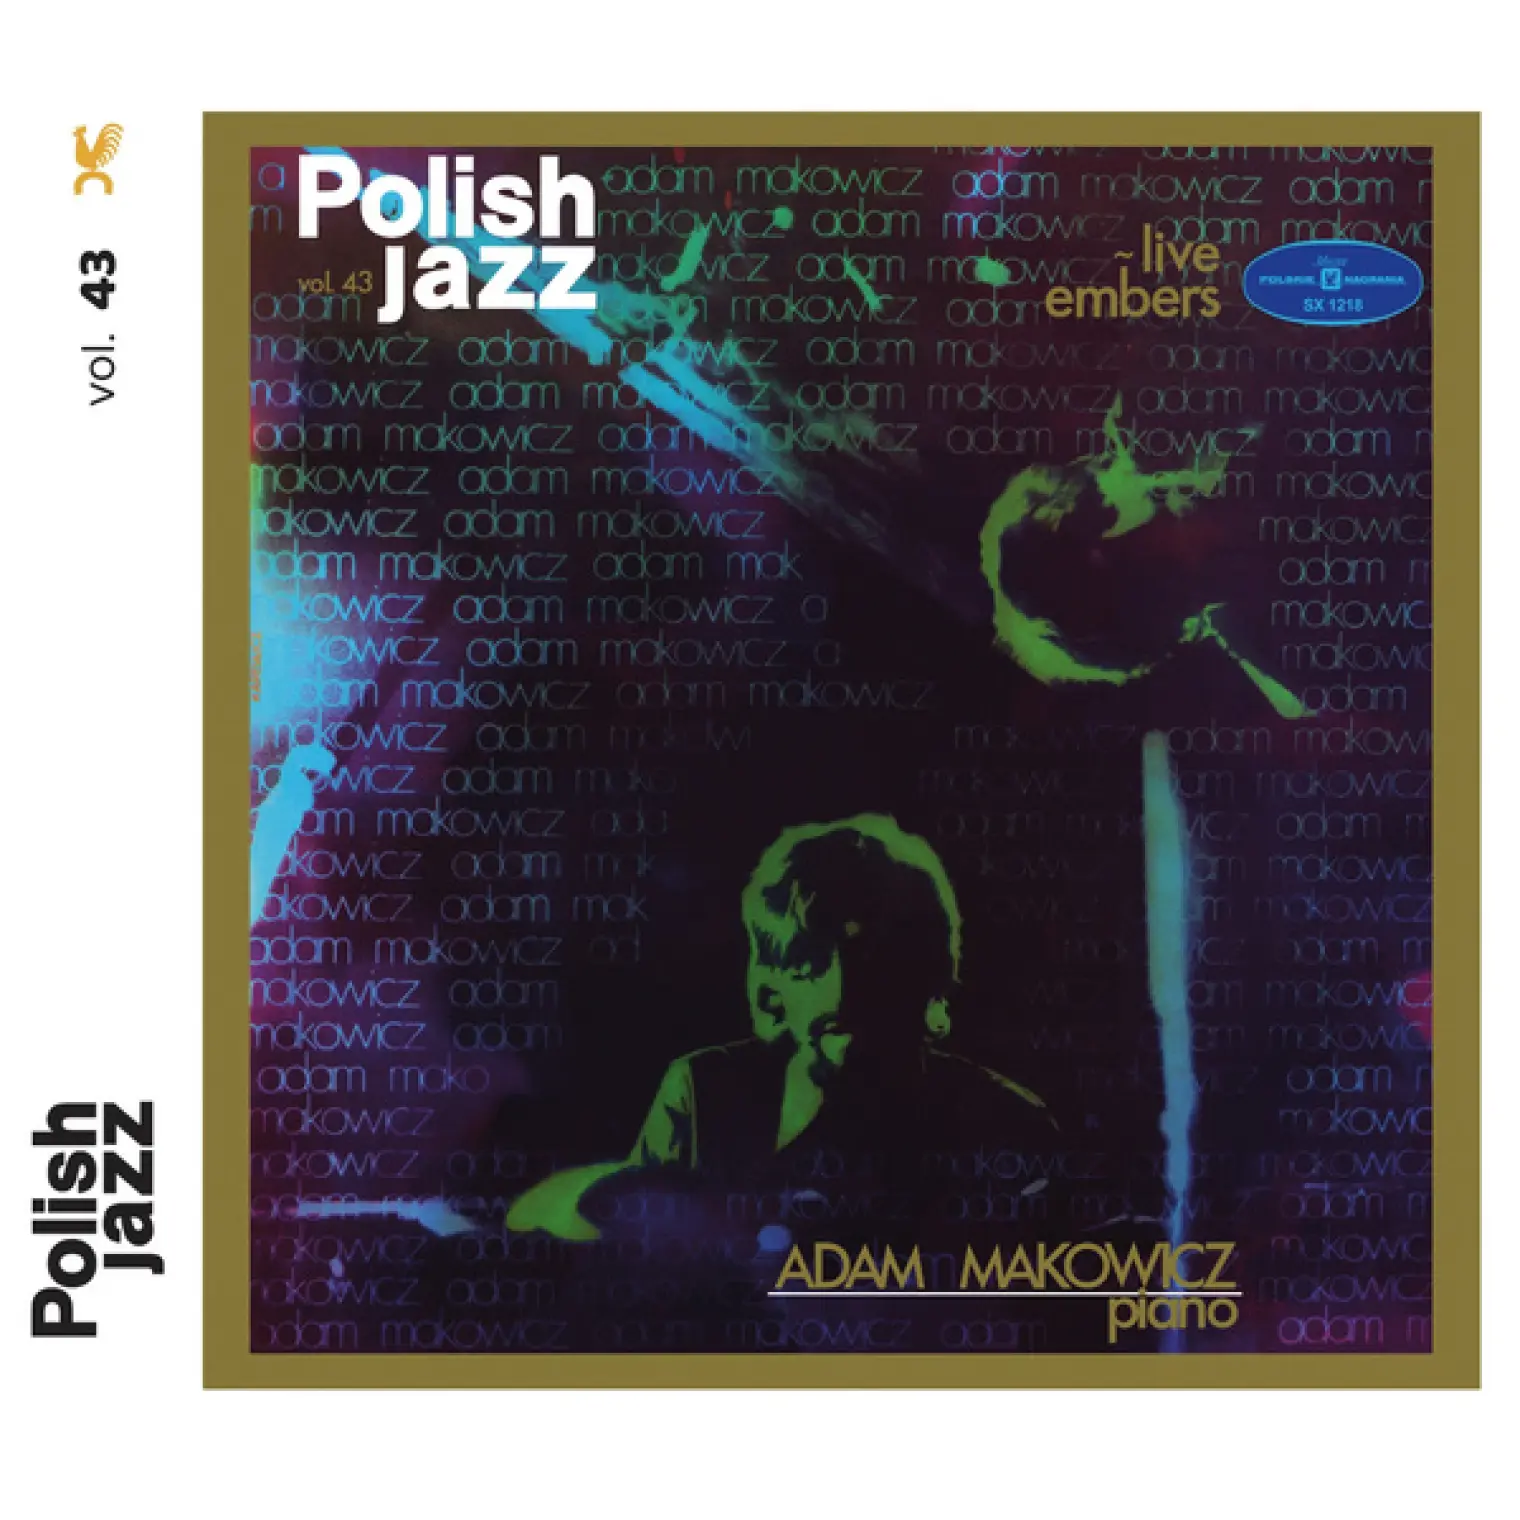 Live Embers (Polish Jazz vol. 43) -  Adam Makowicz 